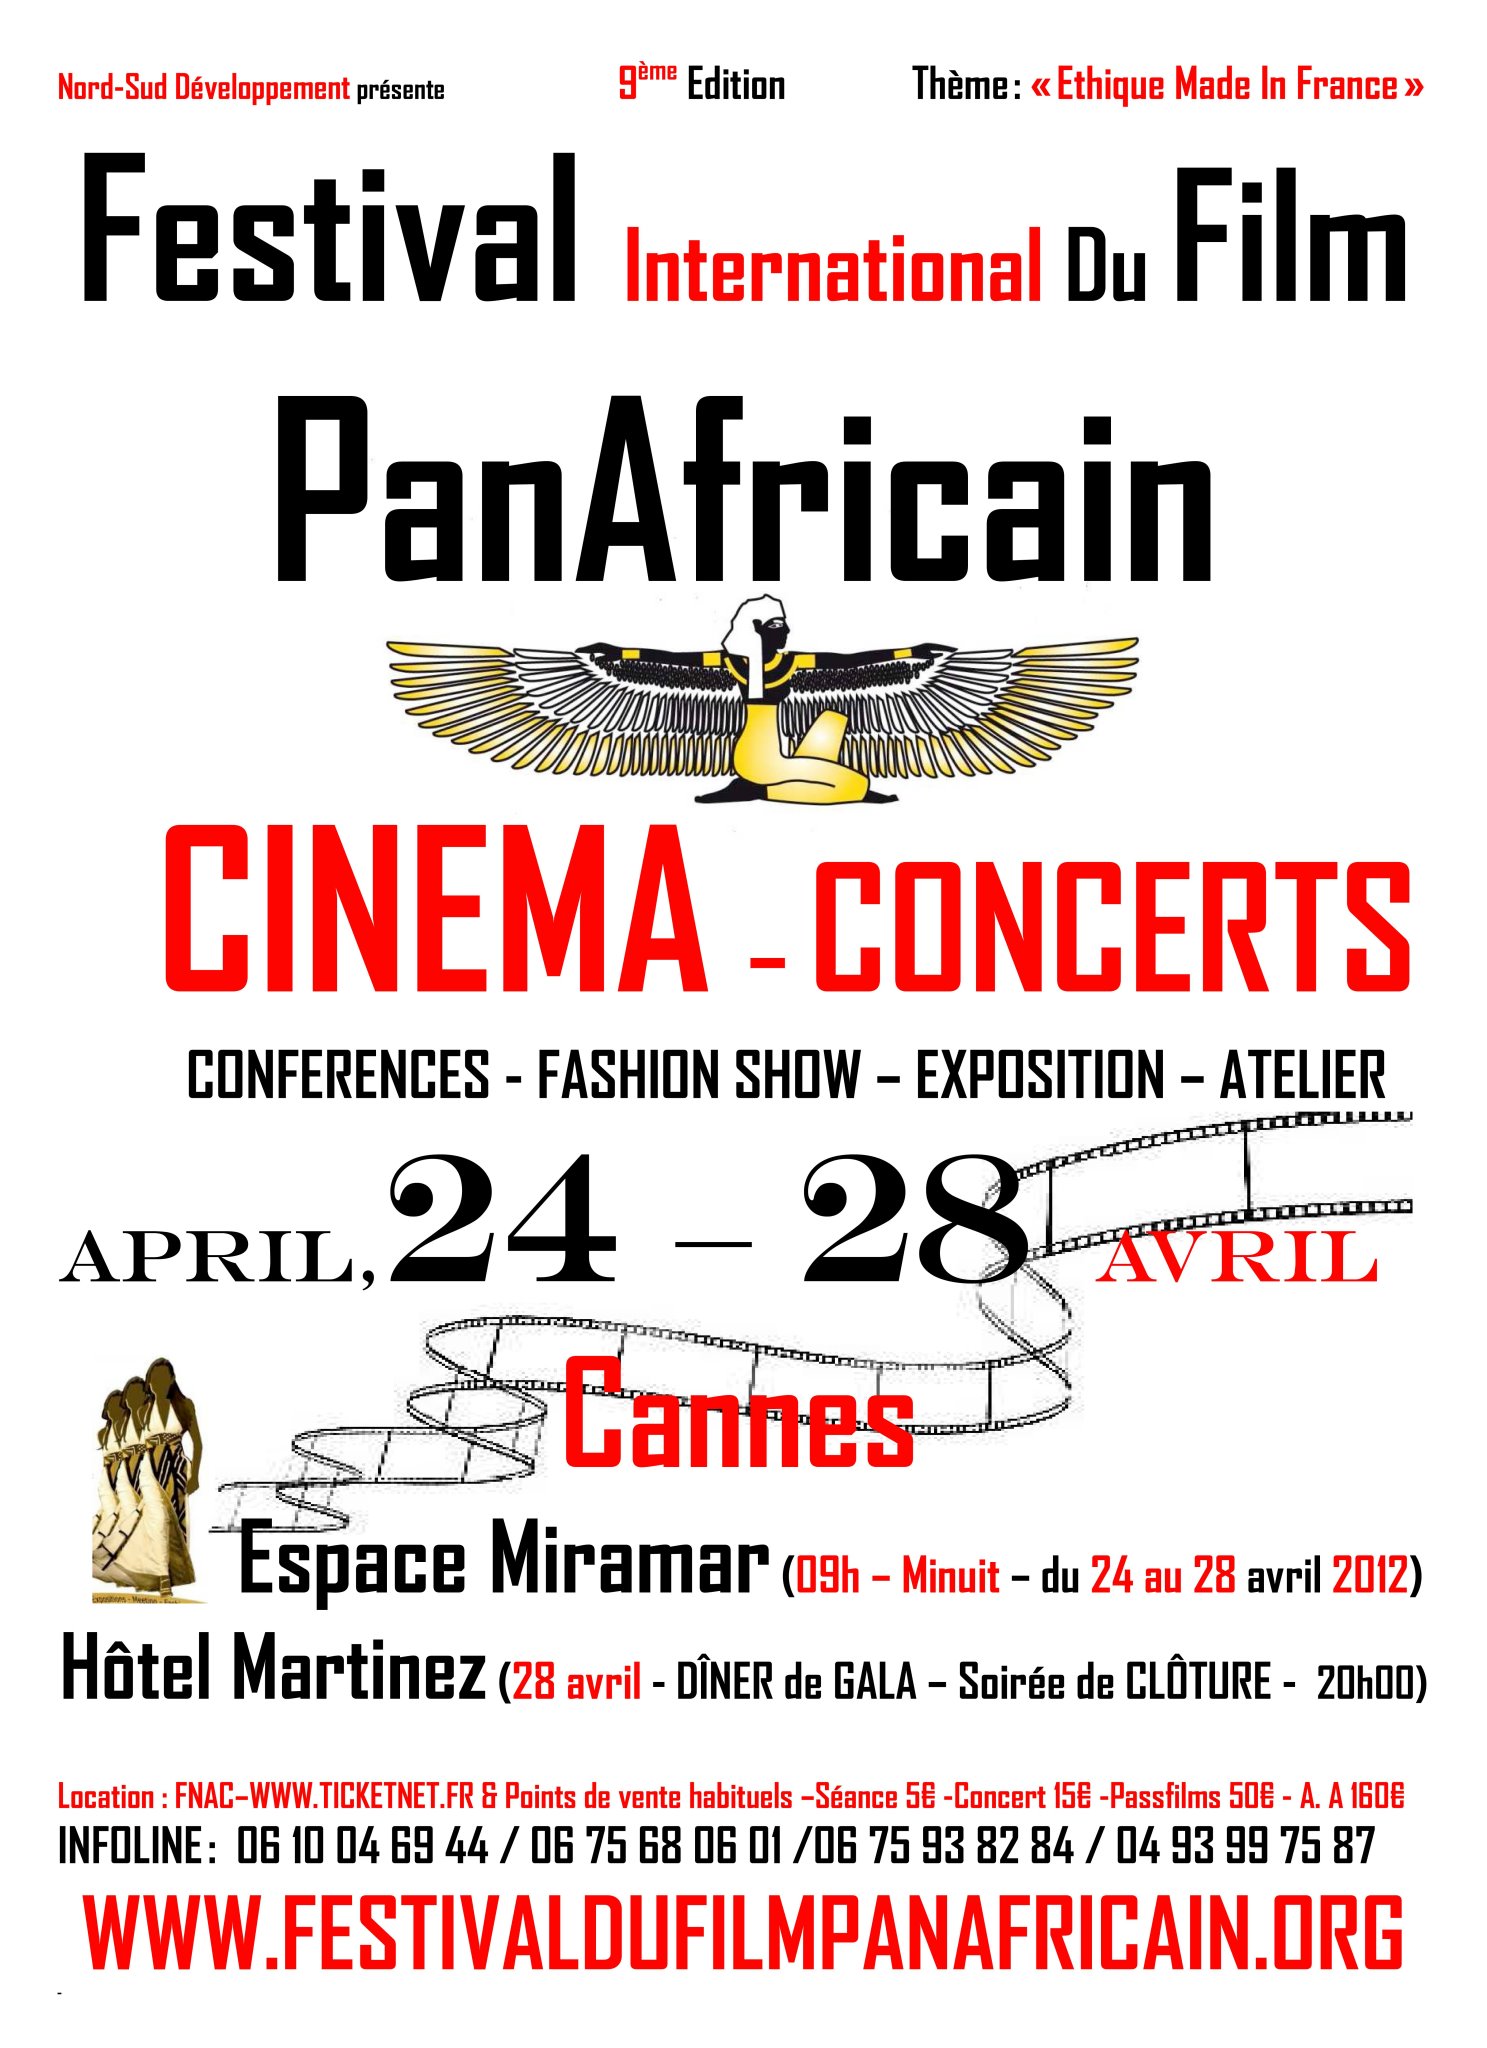 FESTIVAL INTERNATIONAL DU FILM PANAFRICAIN - 2012 - Cannes Film Festival - 65eme - https://maziki.fr